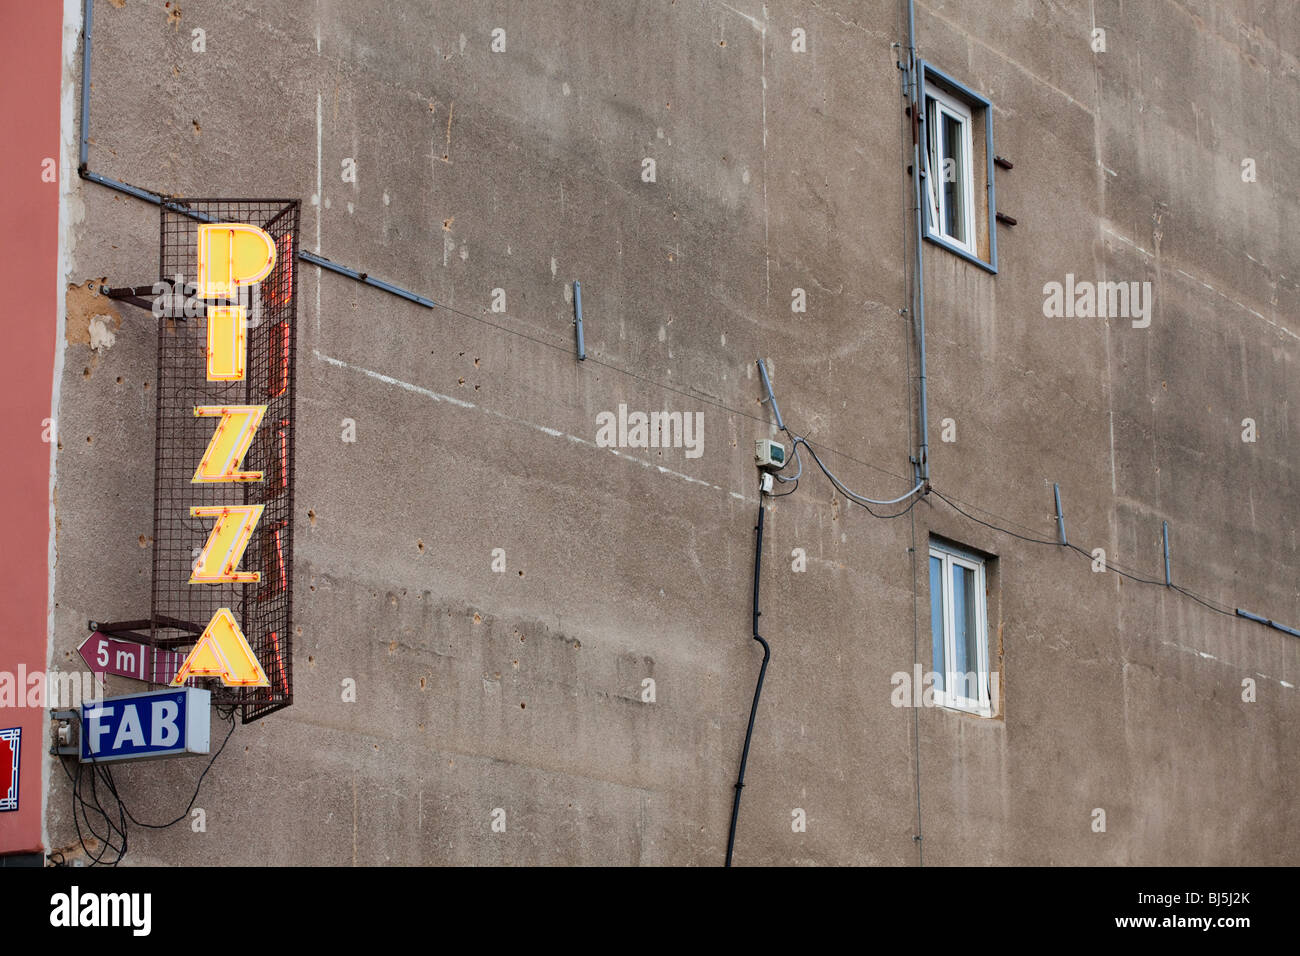 Affiche de pizza sur un bâtiment. Néon Banque D'Images